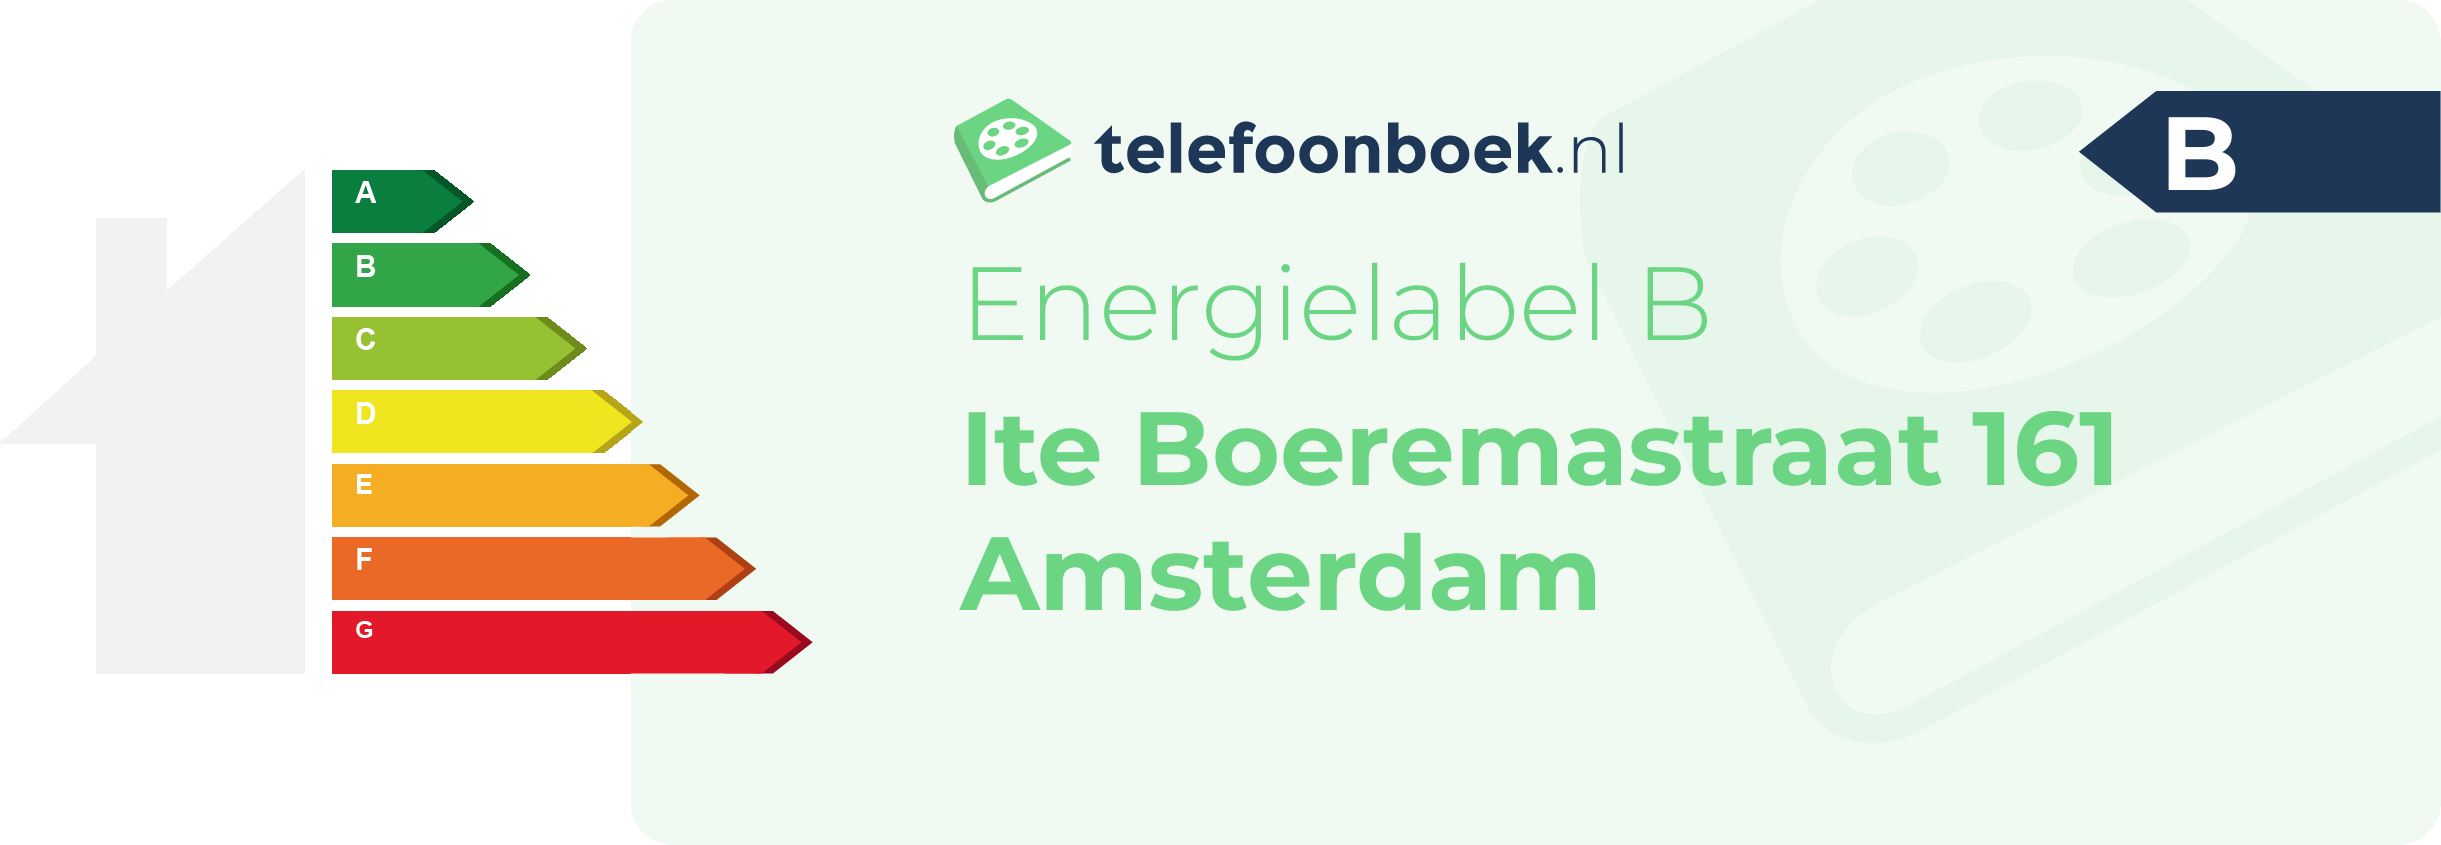 Energielabel Ite Boeremastraat 161 Amsterdam